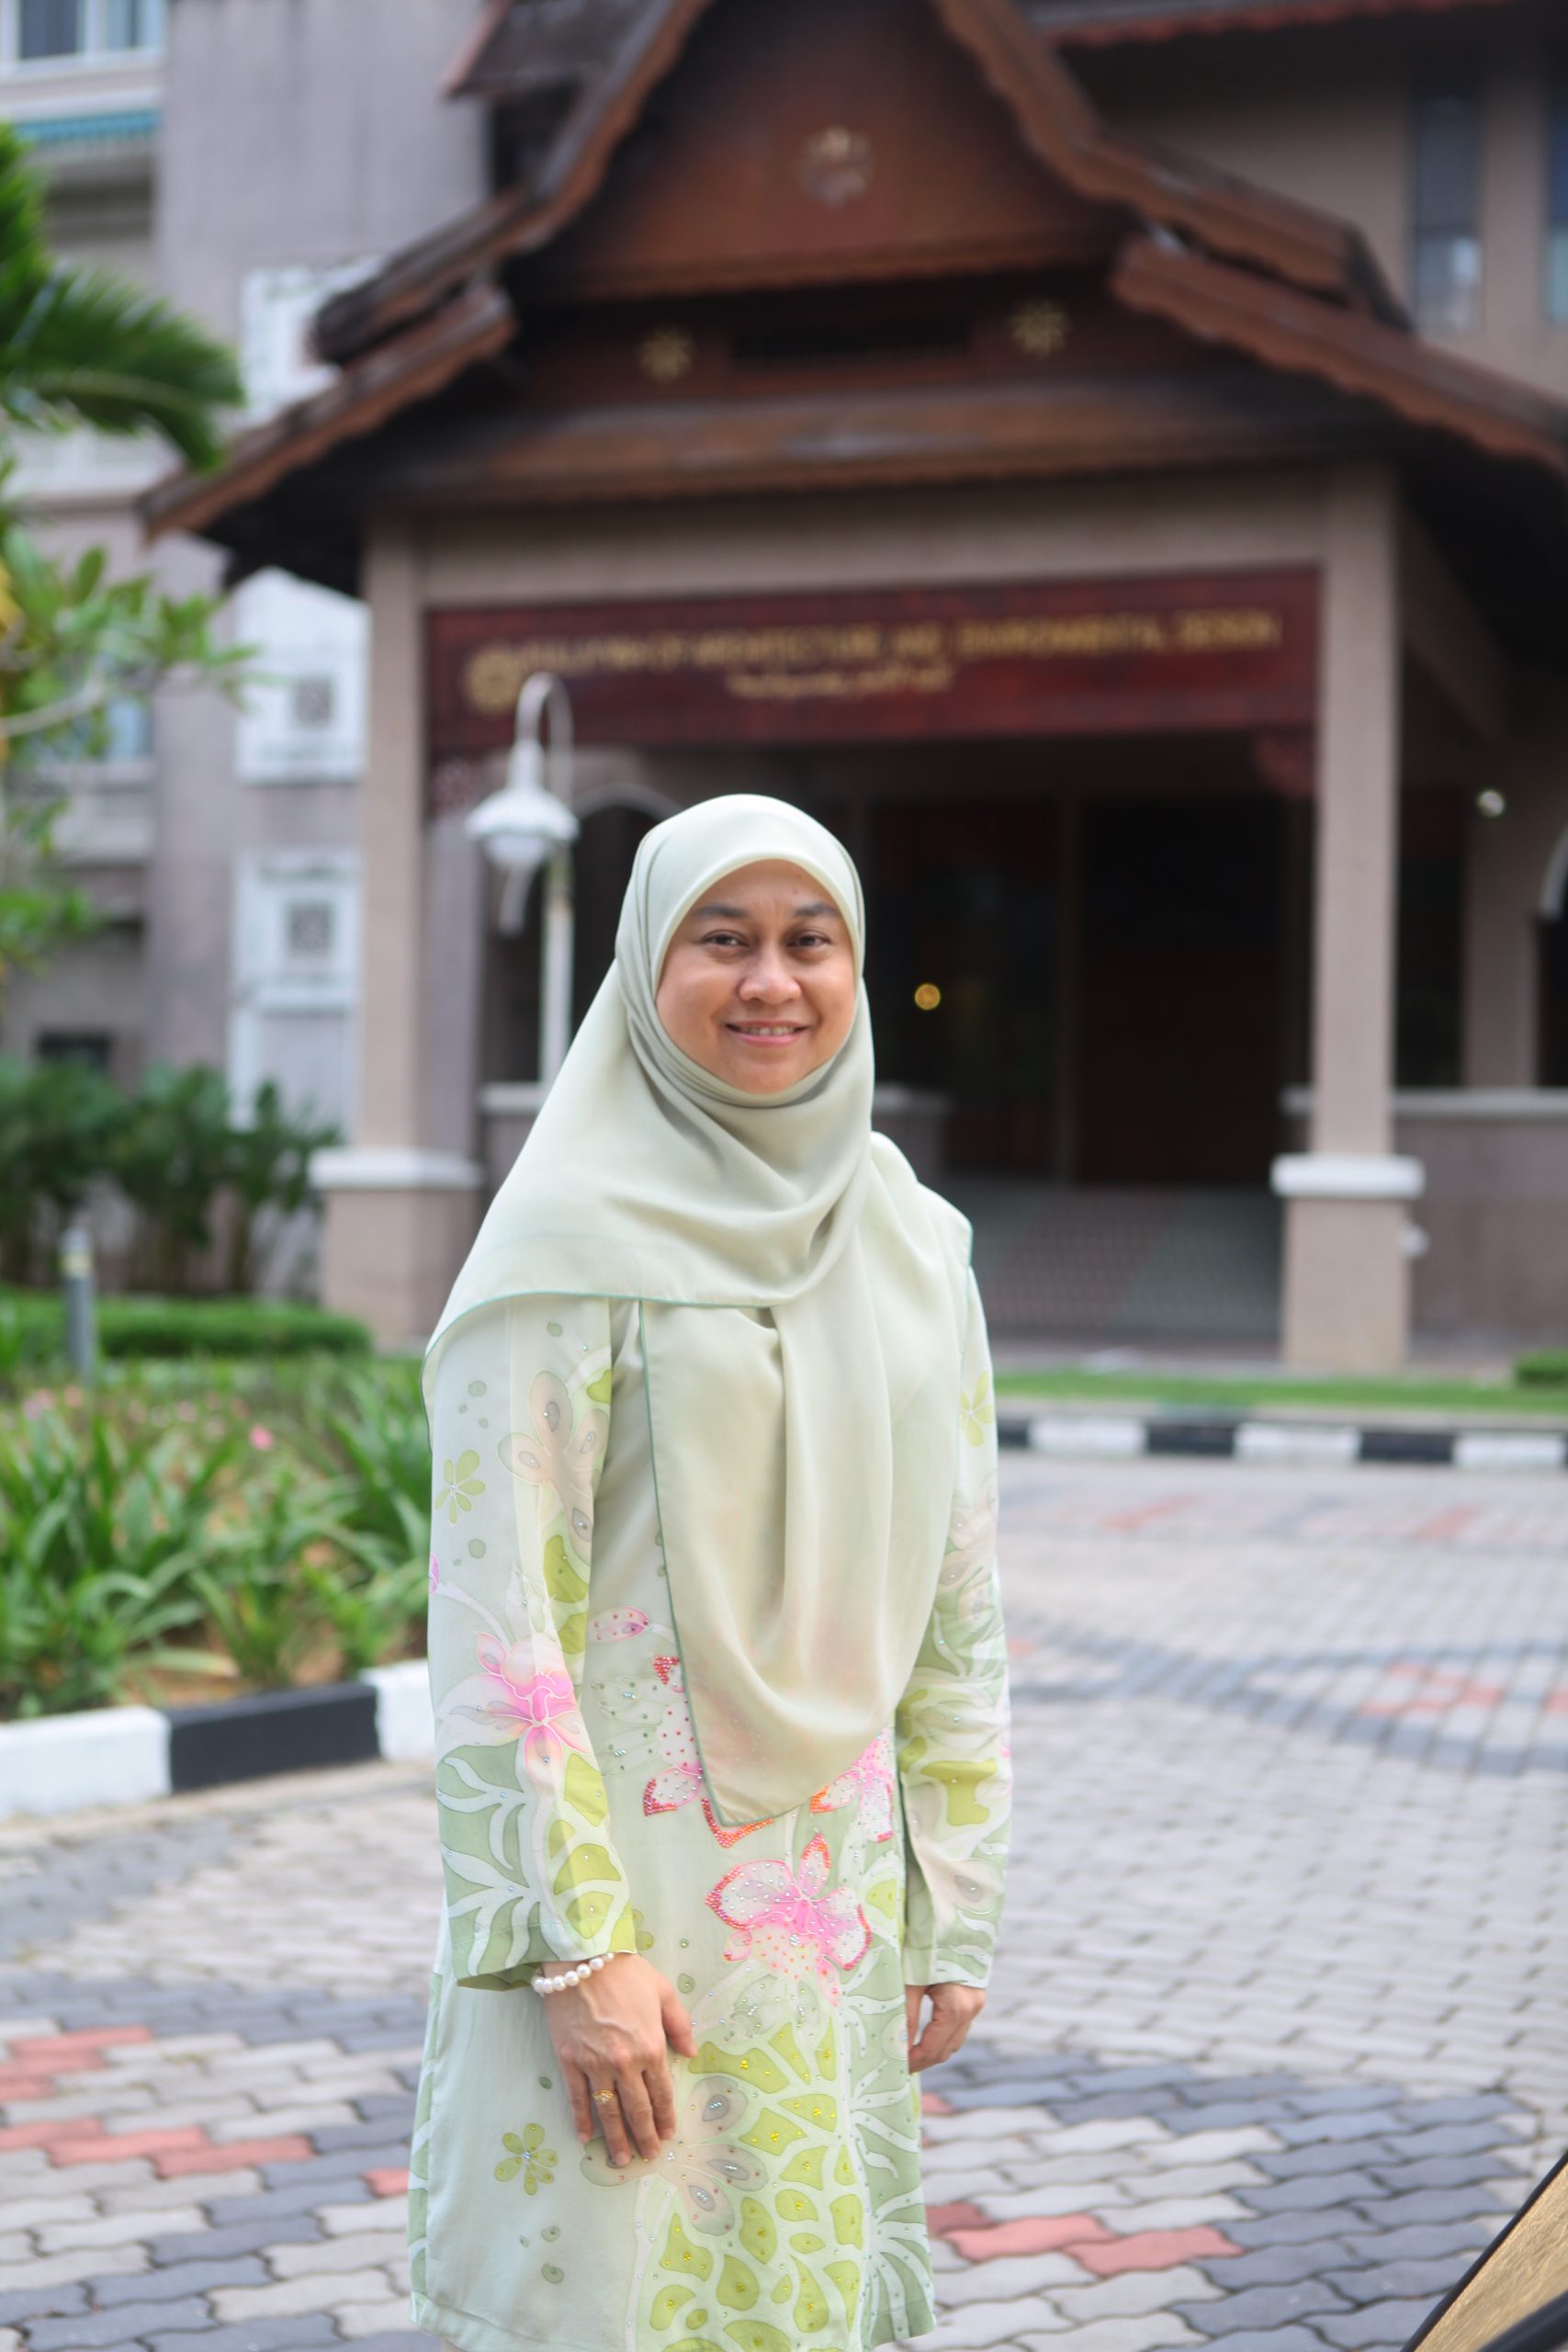 Asst. Prof. Ts. Dr. Nur Affah Mohyin